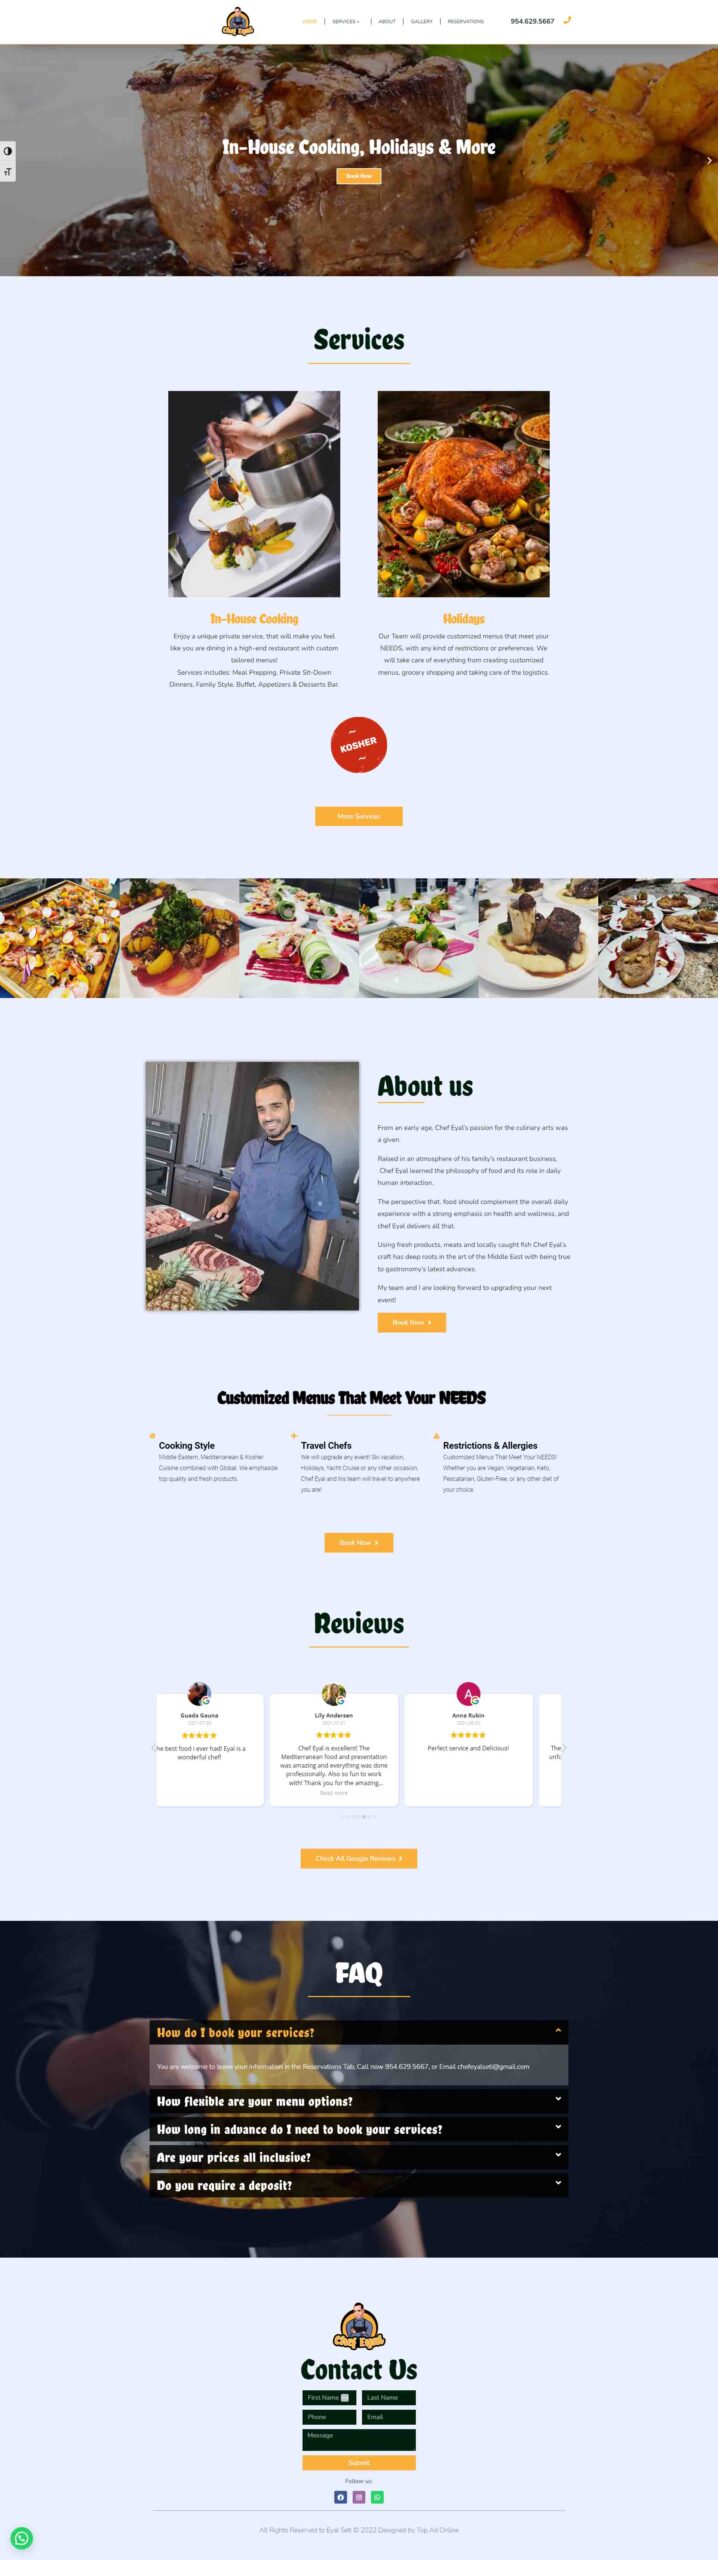 restaurant-chef-website-design